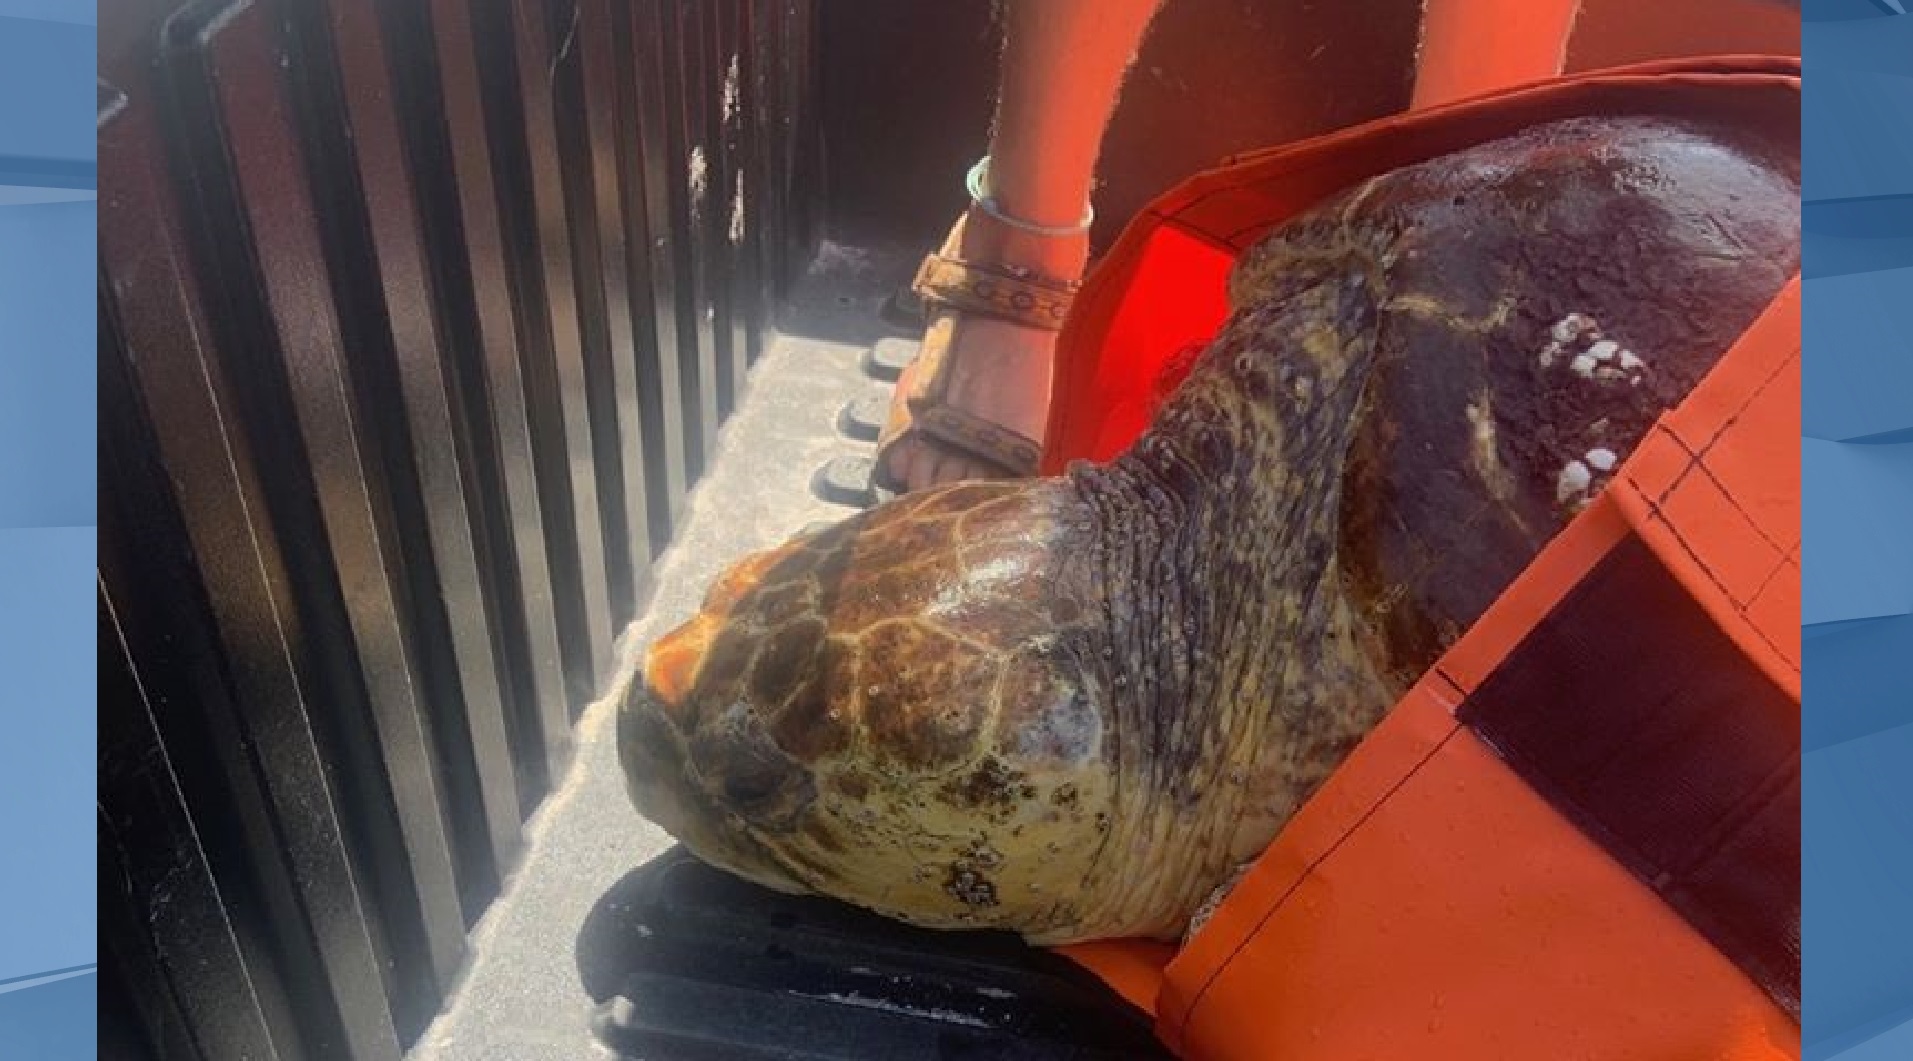 Boat strikes cause deaths of 2 sea turtles off Sanibel Island